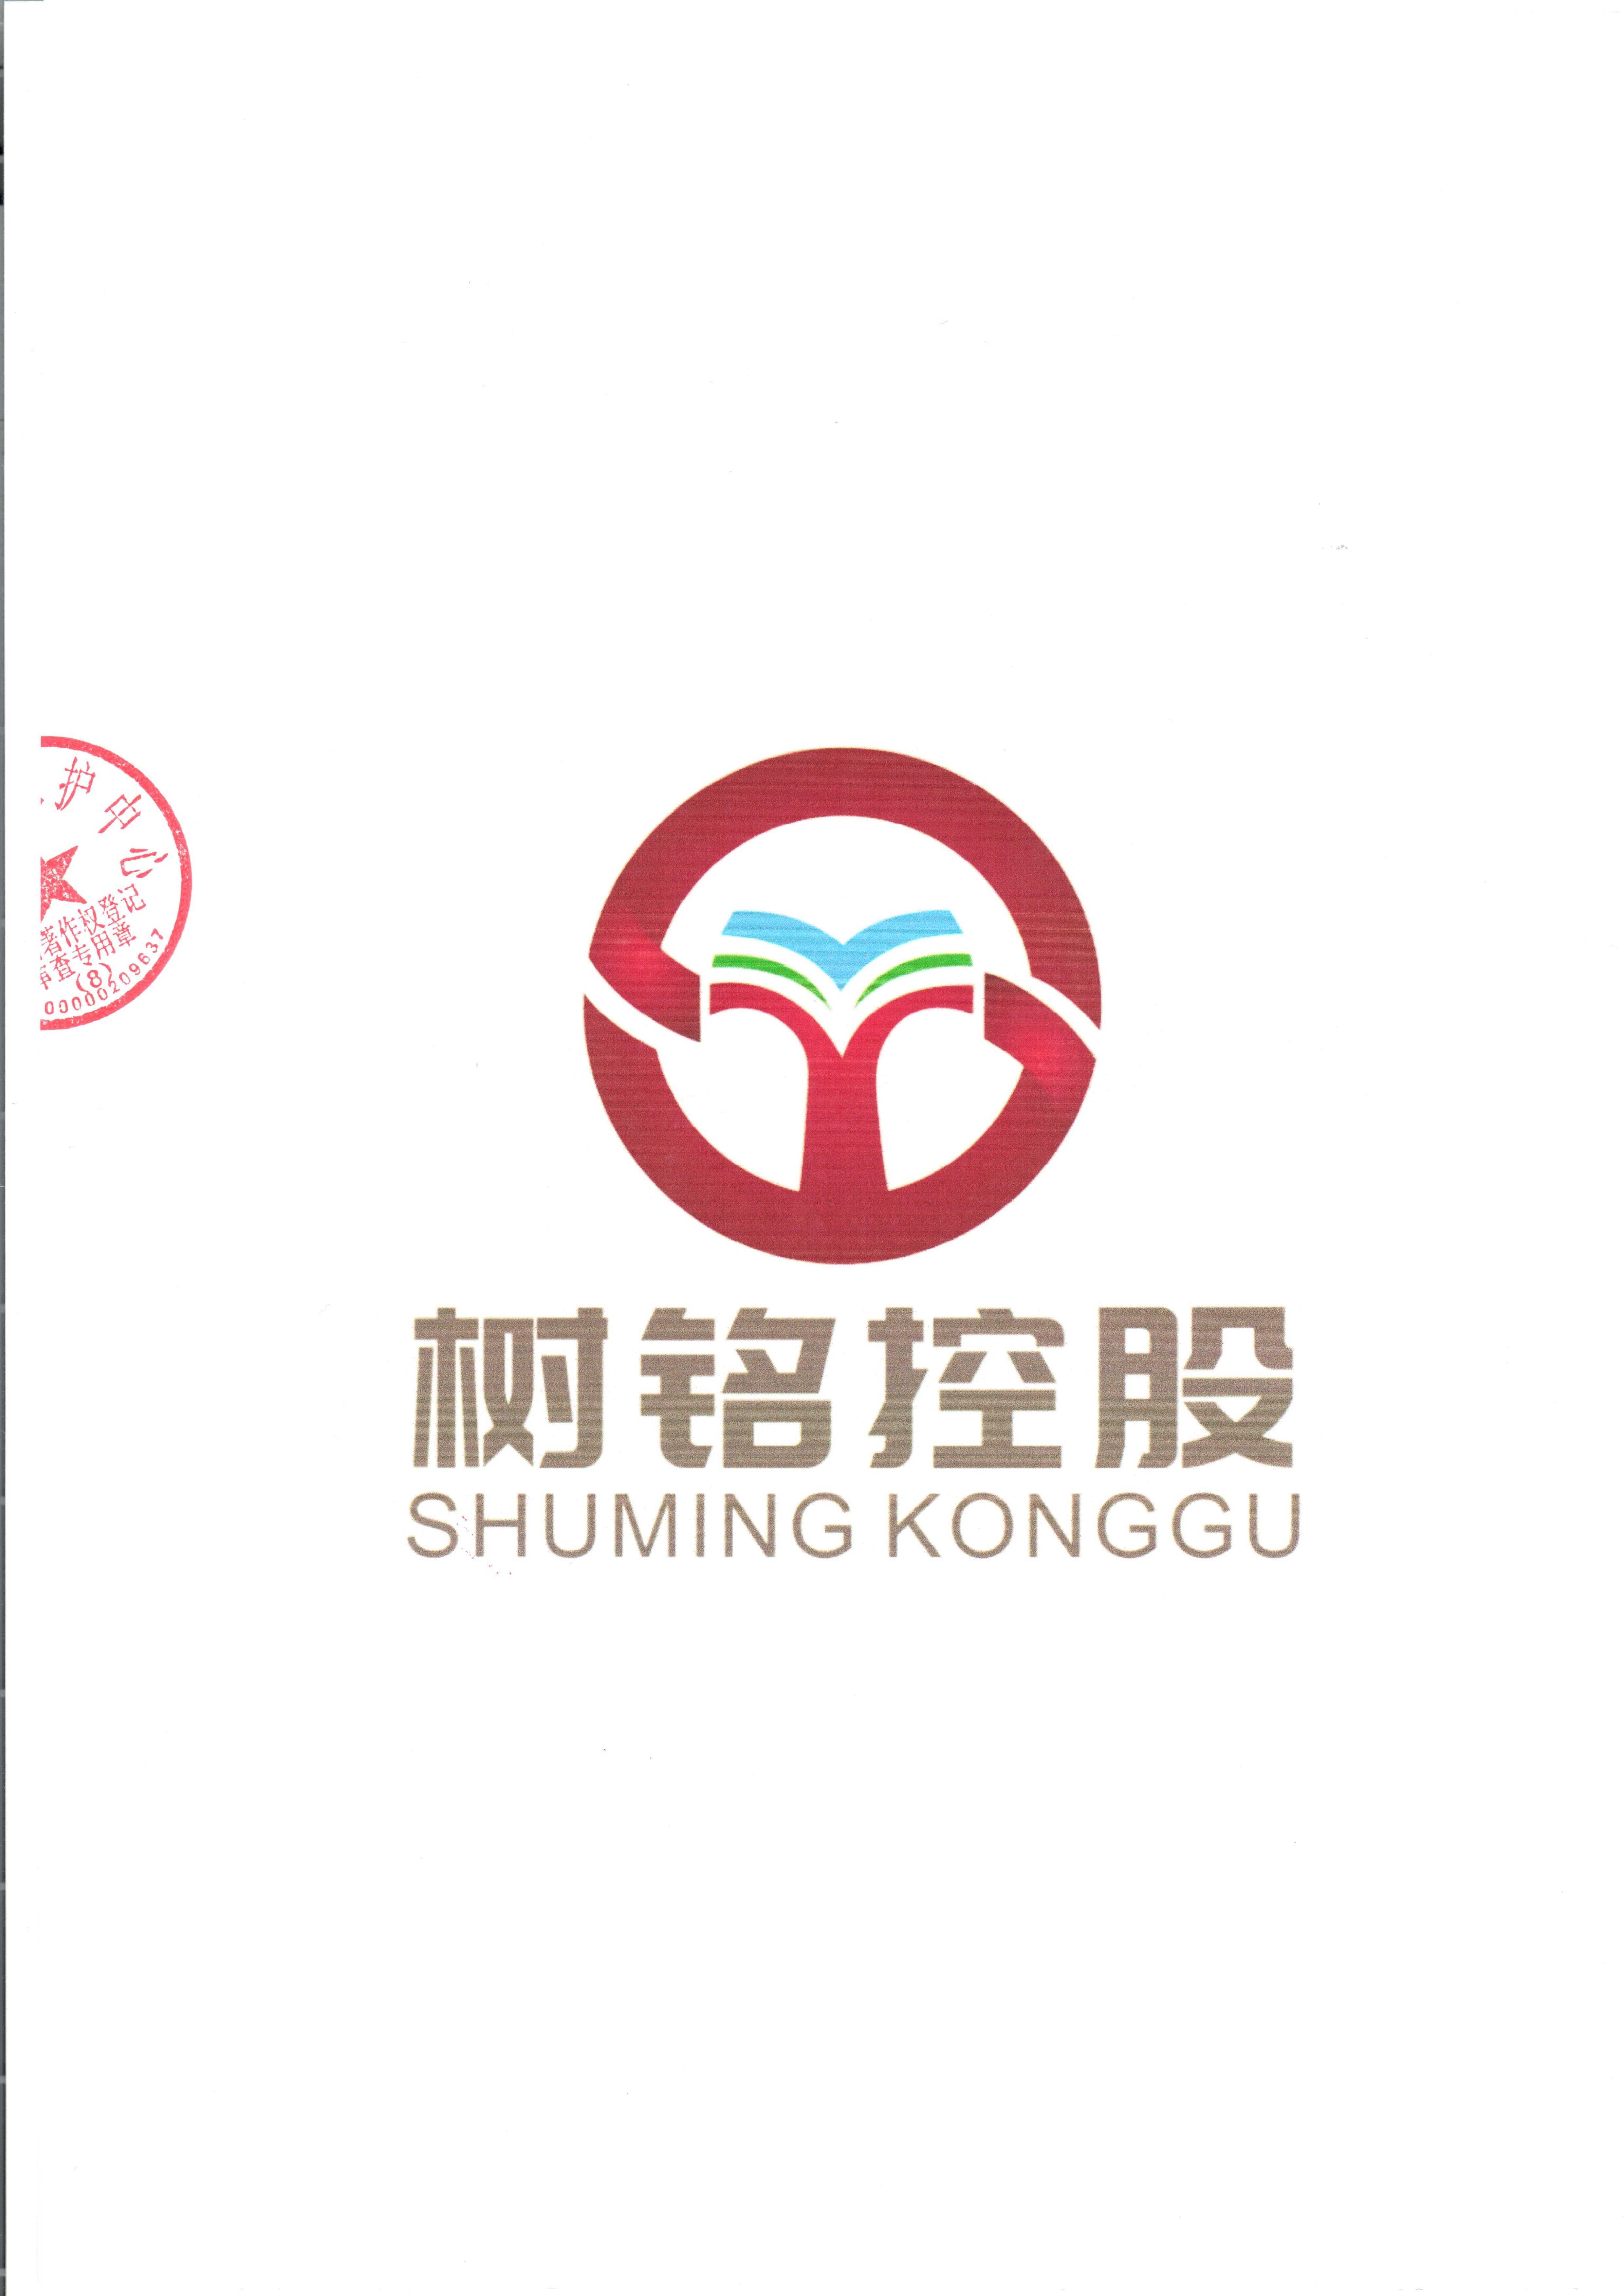 树铭控股集团logo作品登记证书